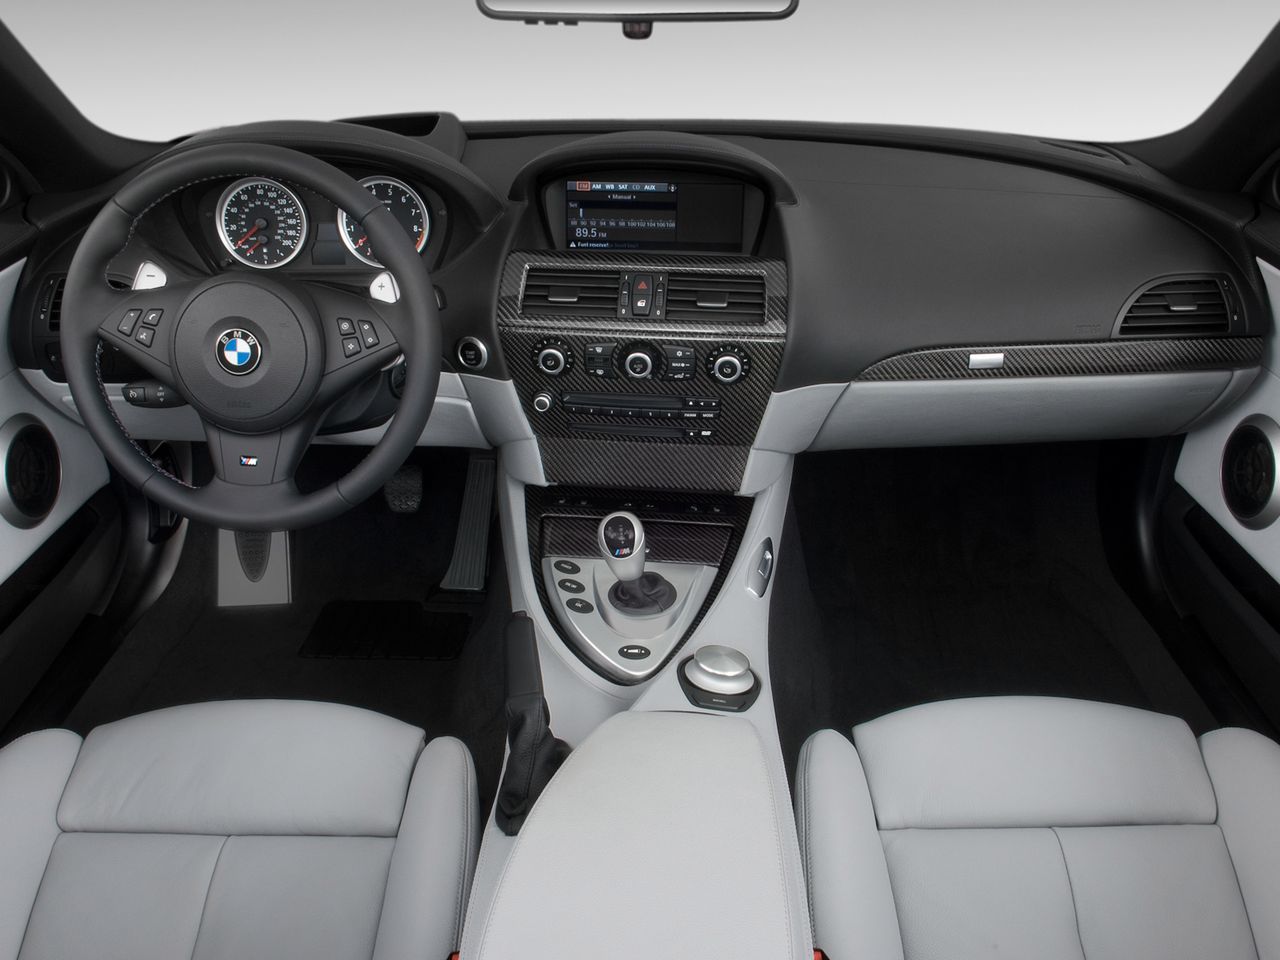 Deska rozdzielcza BMW M6 z imitacją włókna węglowego (fot. lyimg.com)